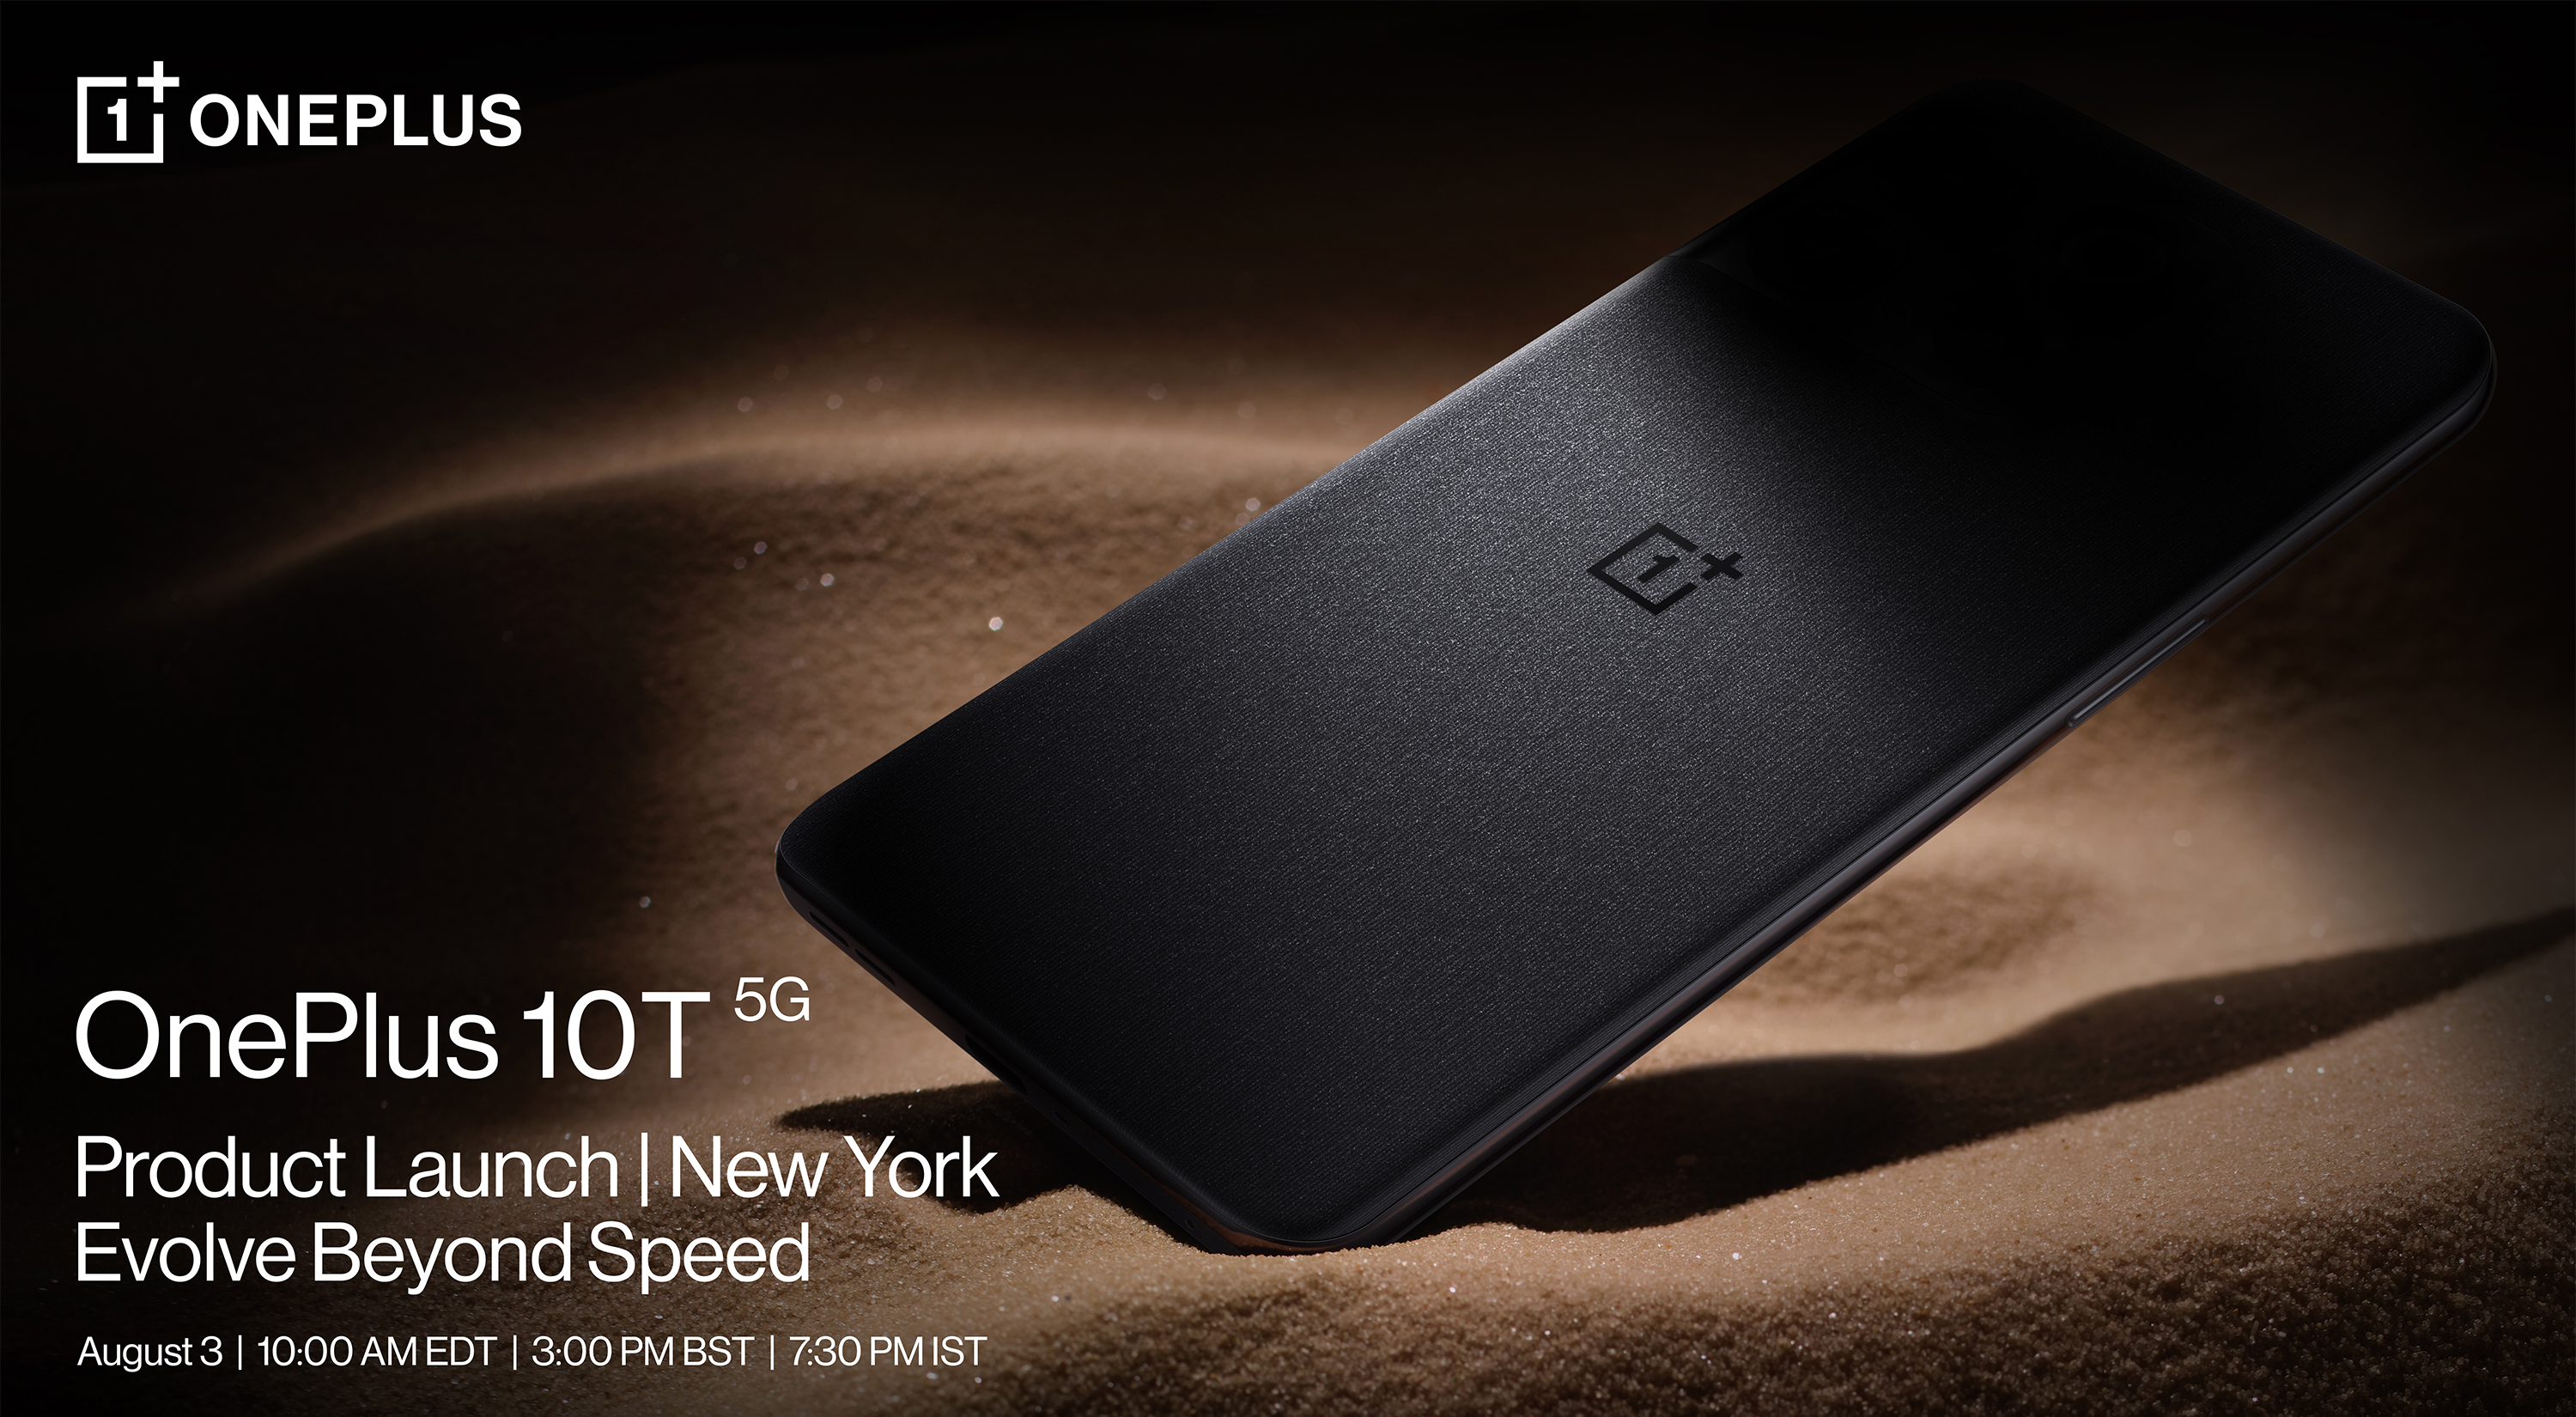 Hoe het lanceringsevenement van de OnePlus 10T op 3 augustus te bekijken?